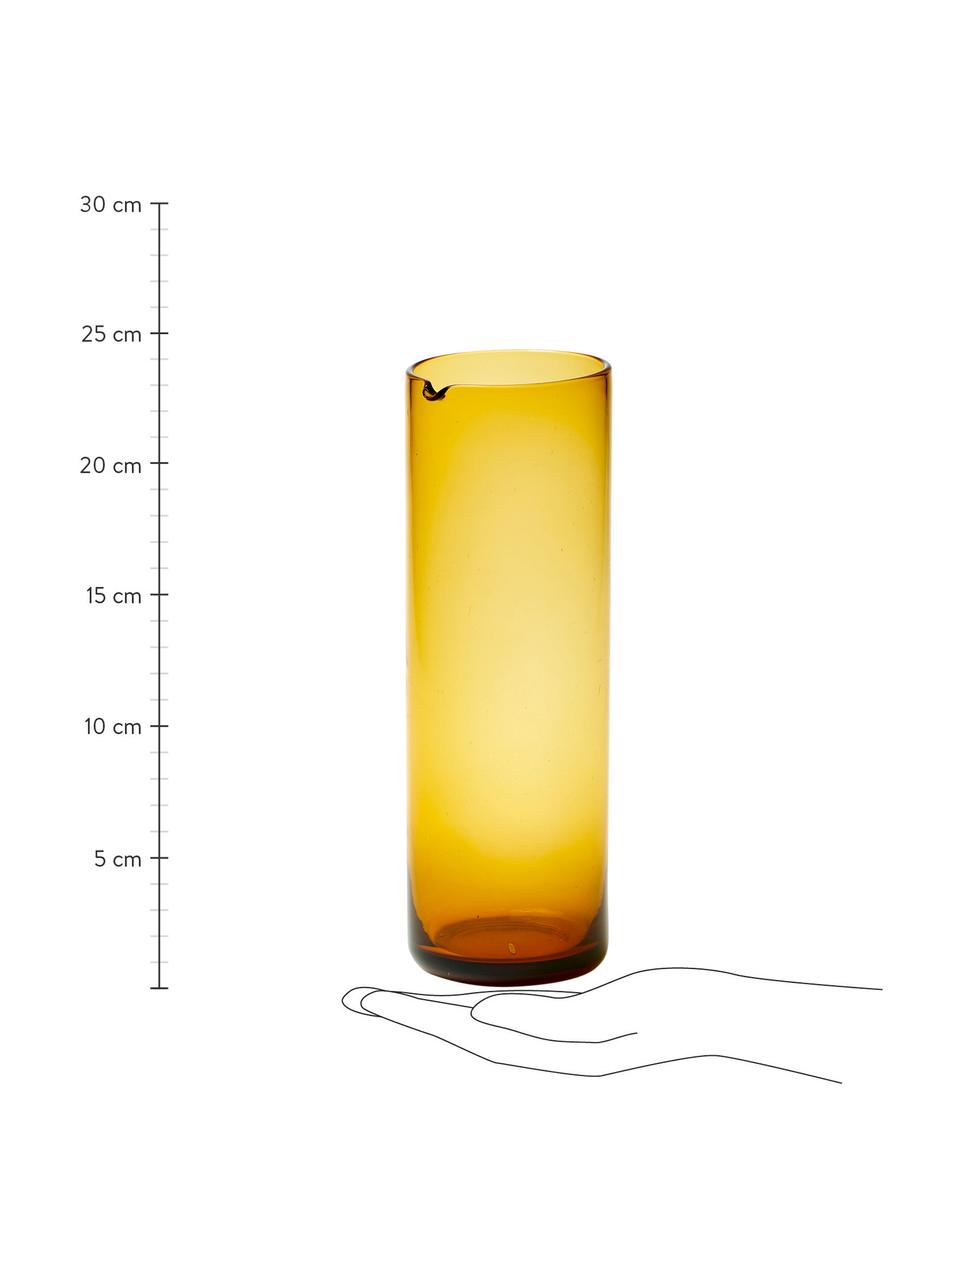 Carafe en verre soufflé jaune Bloom, 1 l, Verre, soufflé bouche, Jaune, Ø 8 x haut. 24 cm, 1 l